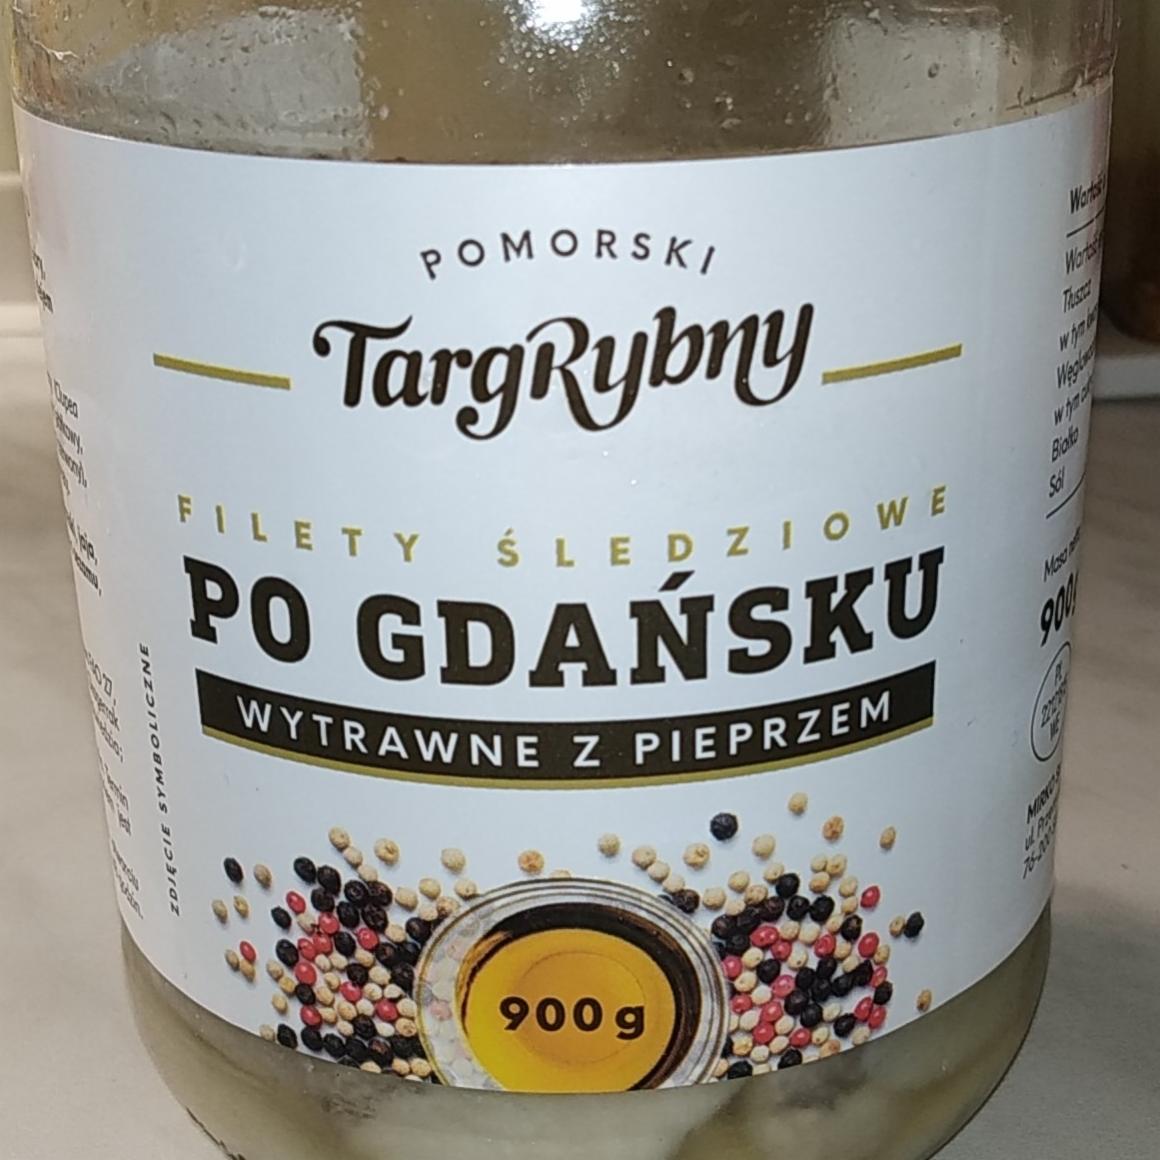 Zdjęcia - Filety śledziowe po Gdańsku z pieprzem Pomorski targ rybny